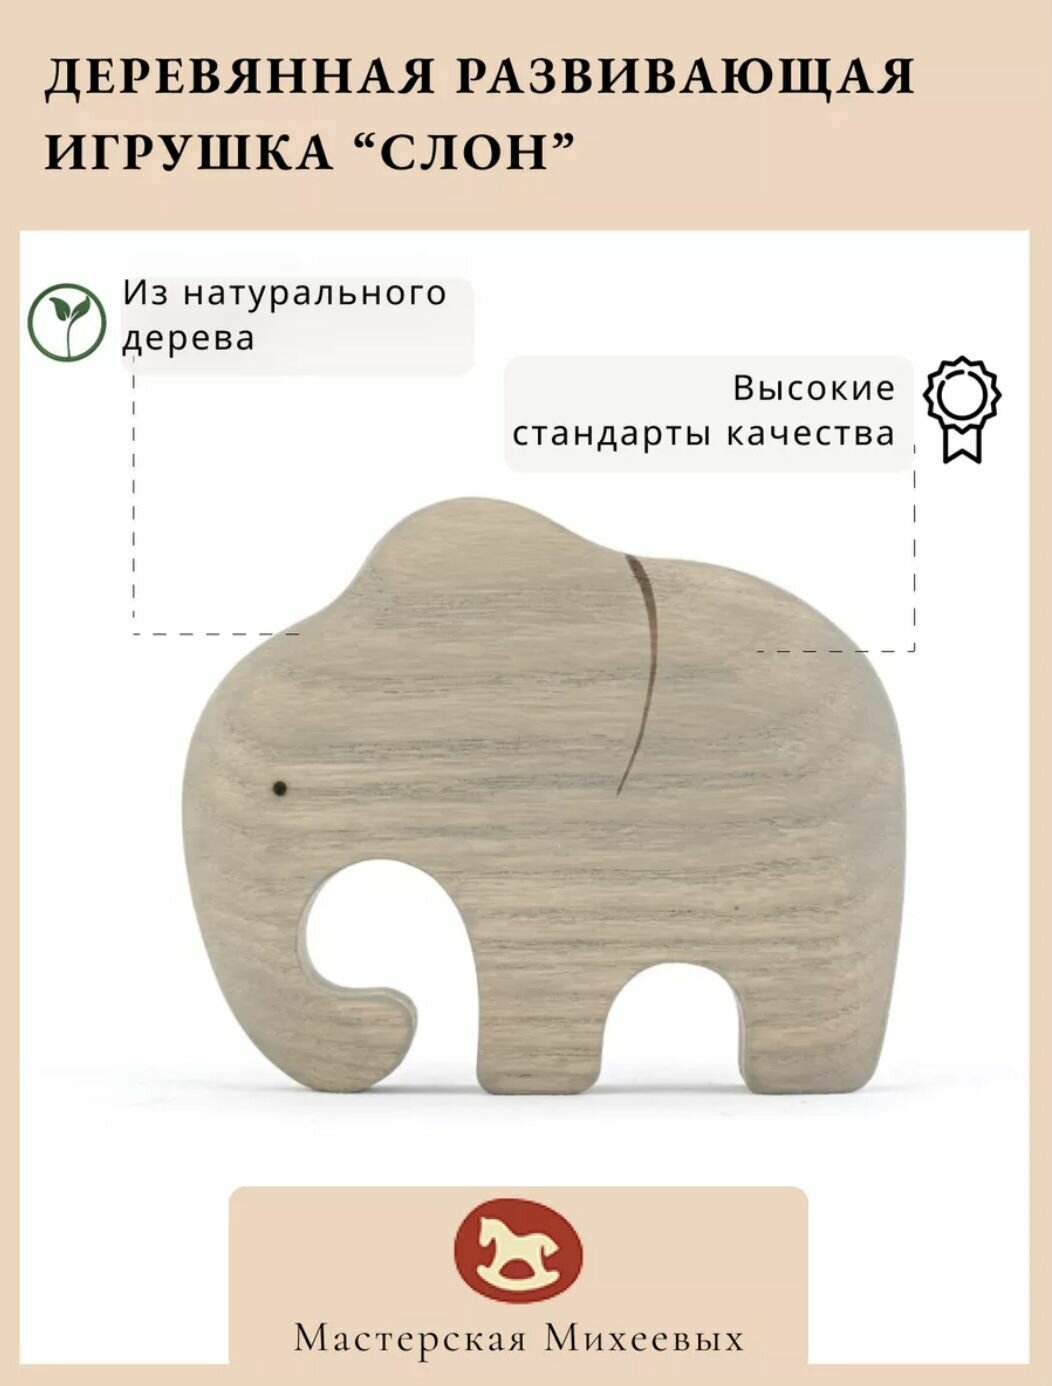 Мастерская Михеевых / Развивающая деревянная игрушка "Слон" / детская вальдорфская / животные Африки